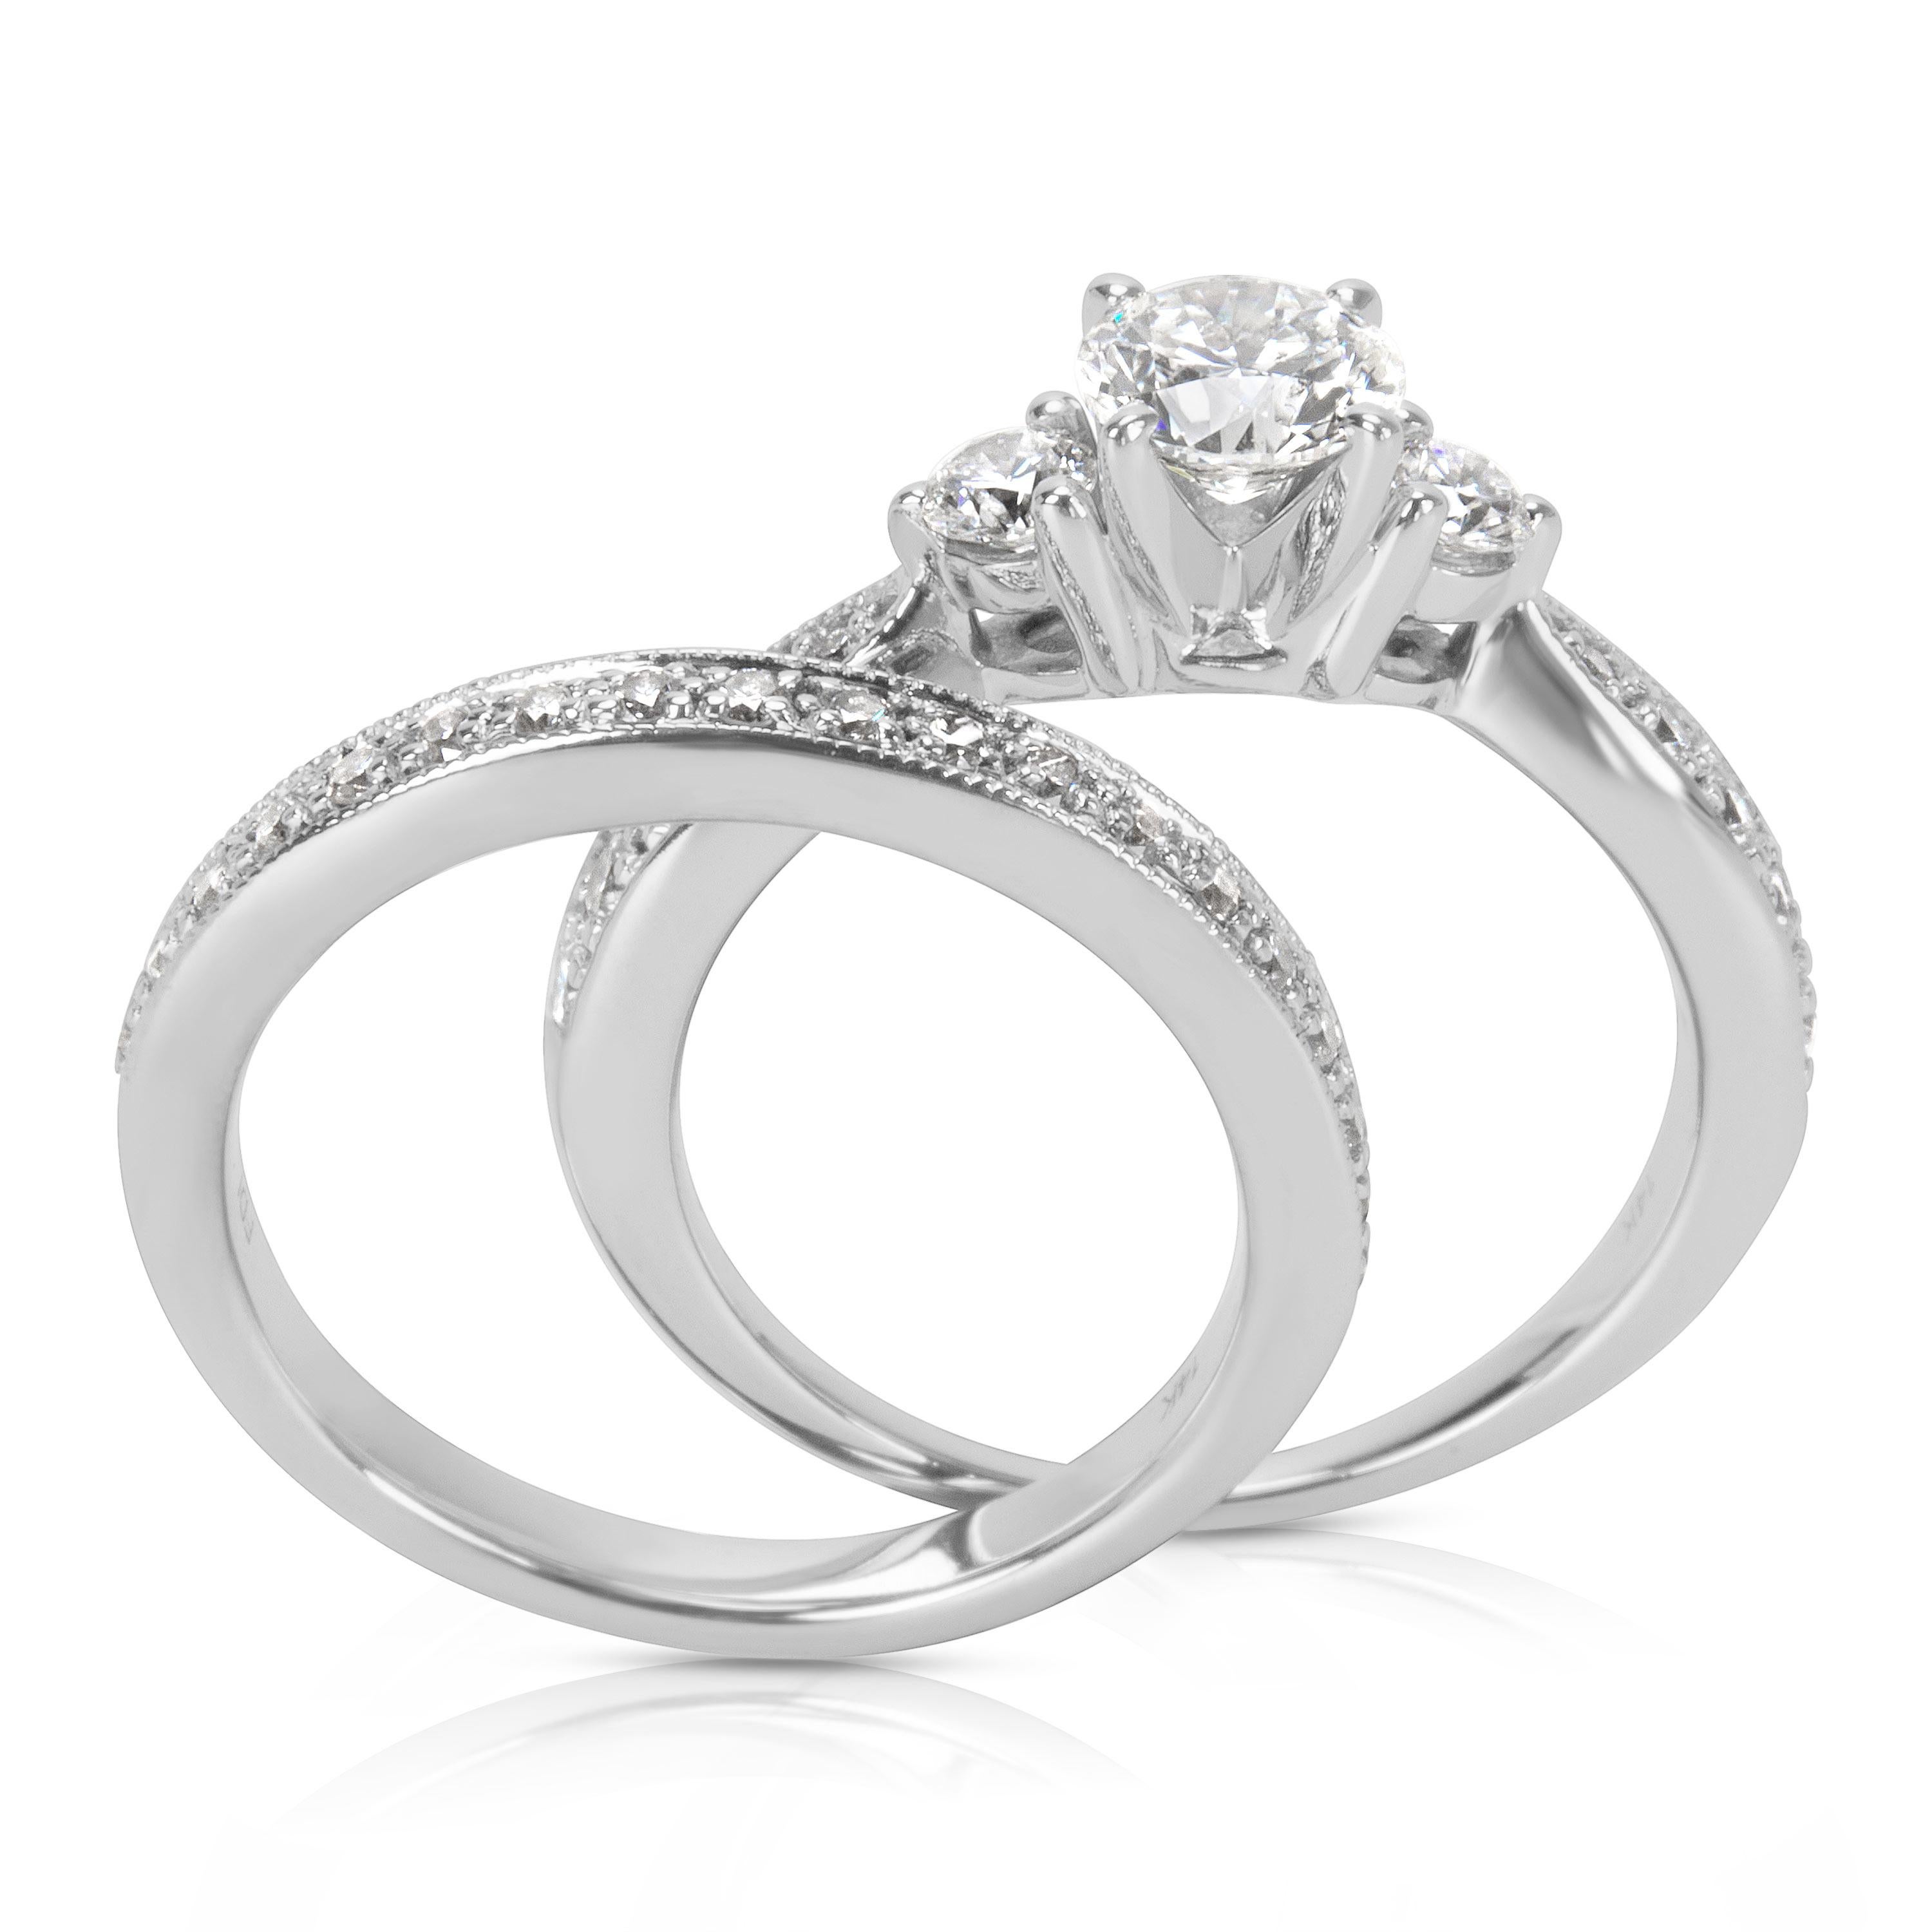 Round Cut Diamond Engagement Ring Wedding Set in 14 Karat White Gold '1.35 Carat'